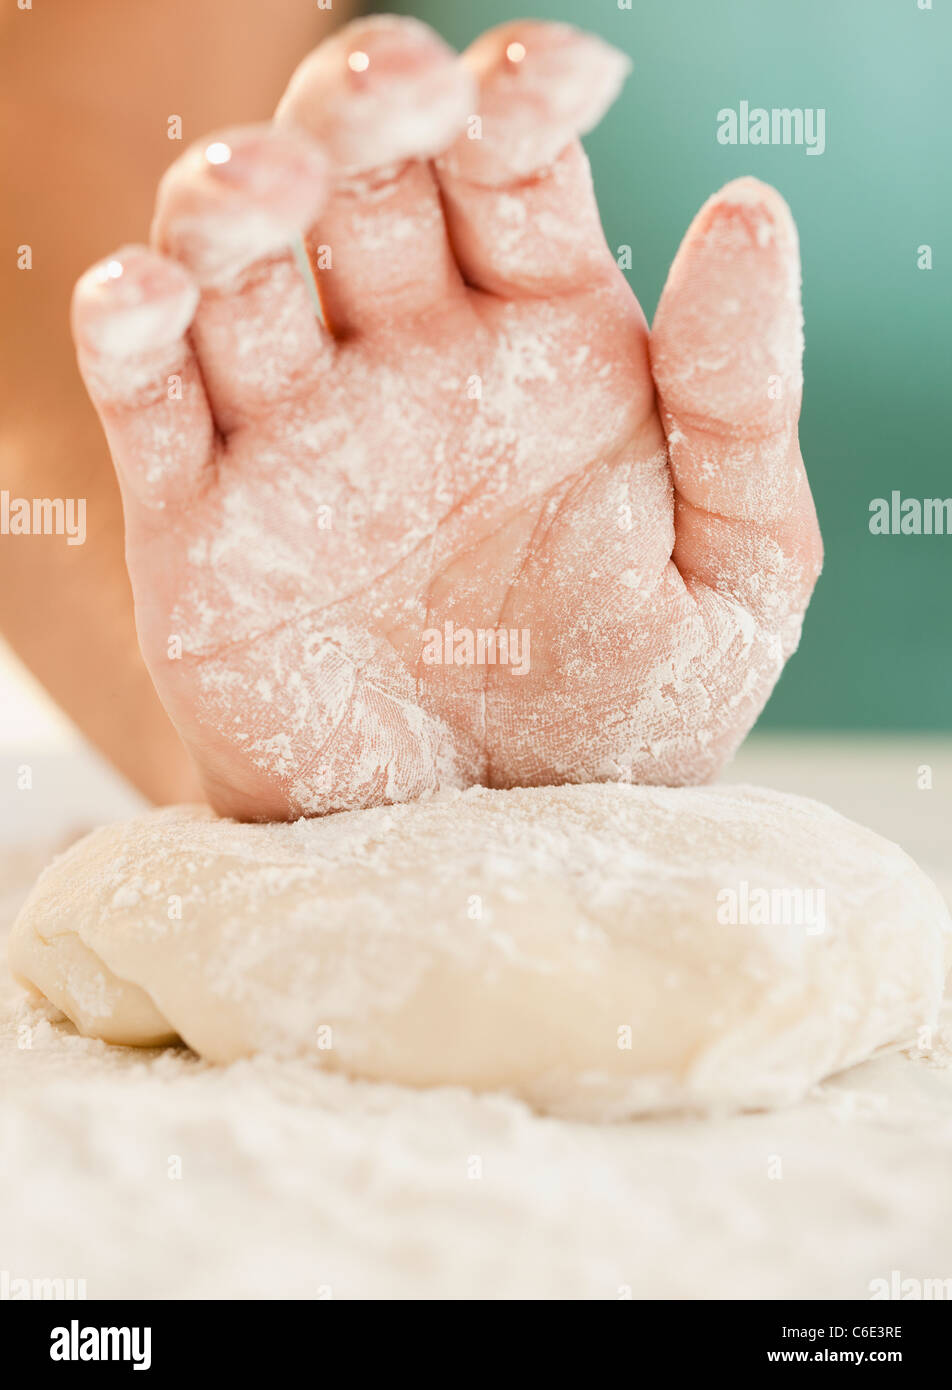 USA, New Jersey, Jersey City, Close up of woman's hand préparer la pâte Banque D'Images